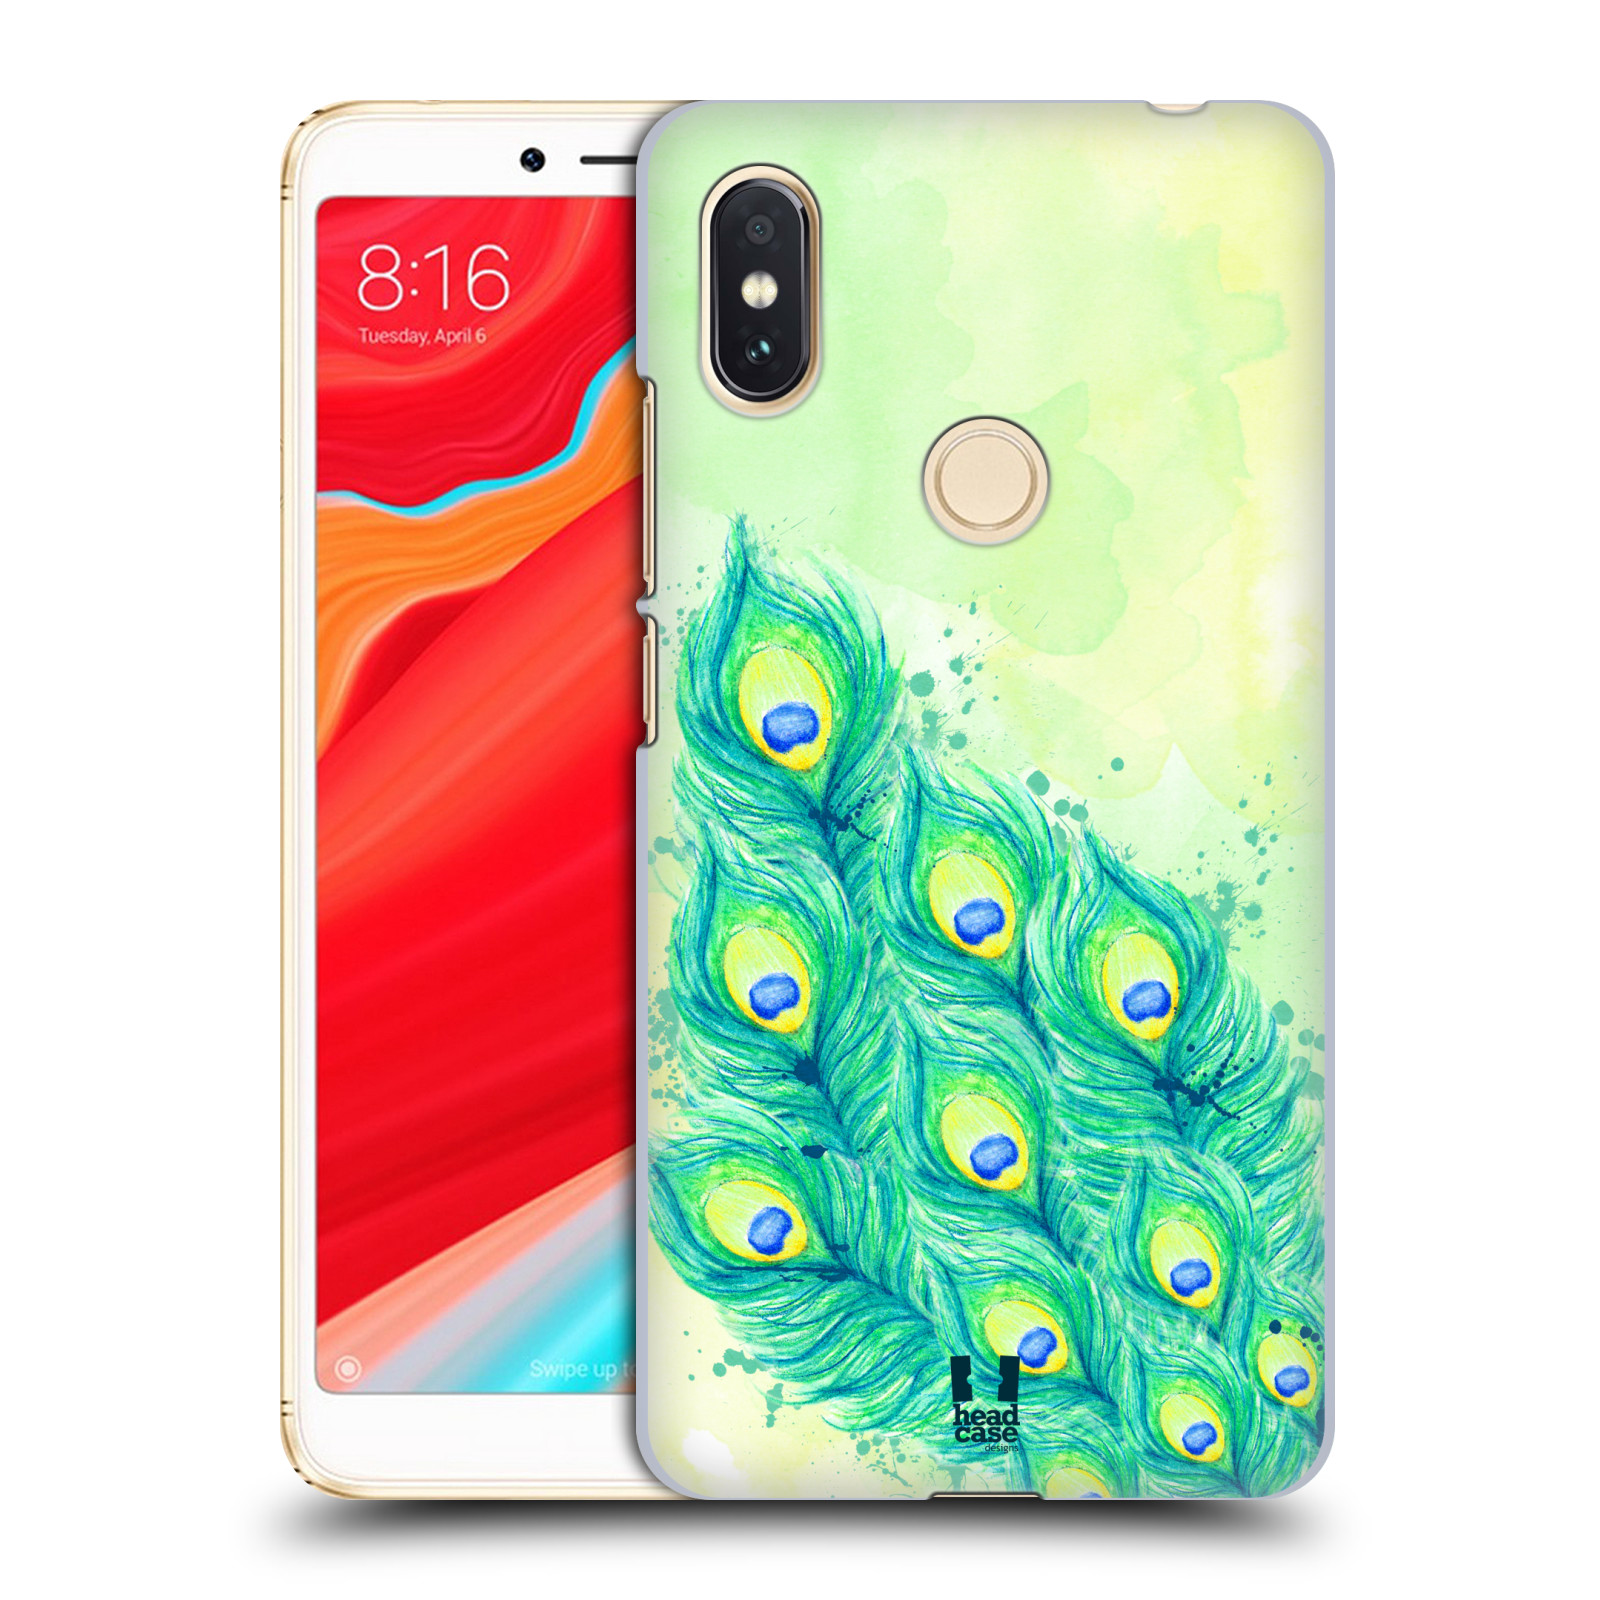 HEAD CASE plastový obal na mobil Xiaomi Redmi S2 vzor Paví pírka barevná MODRÁ A ZELENÁ